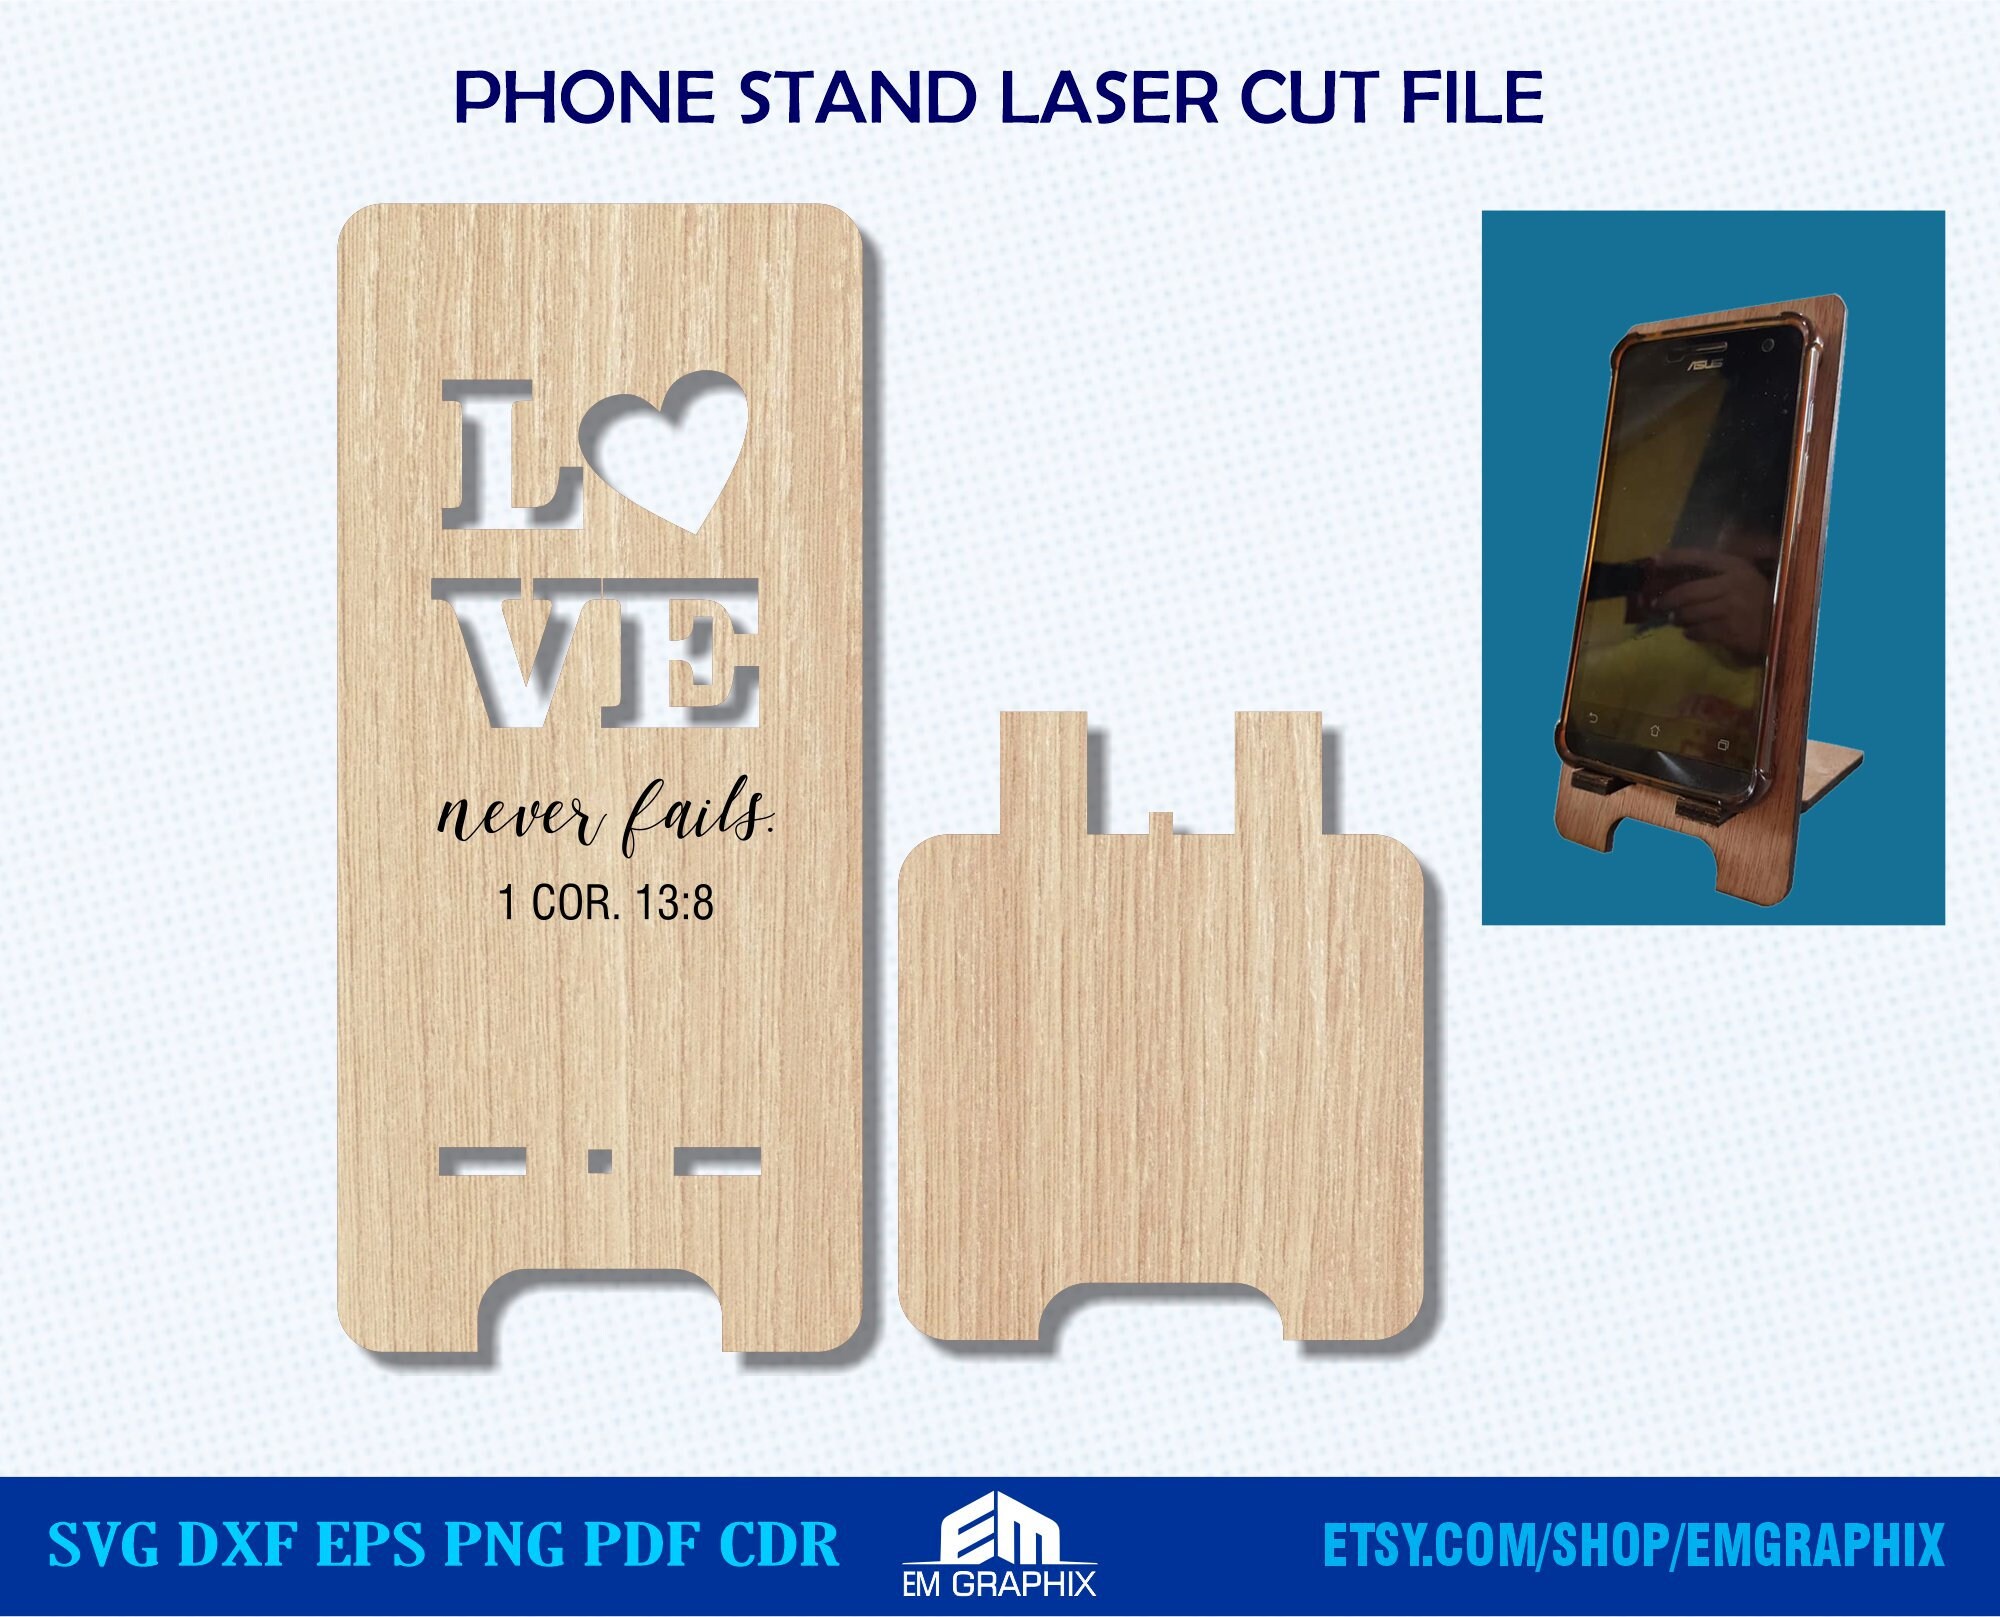 Glue gun stand laser cut vector cnc files lasercut file